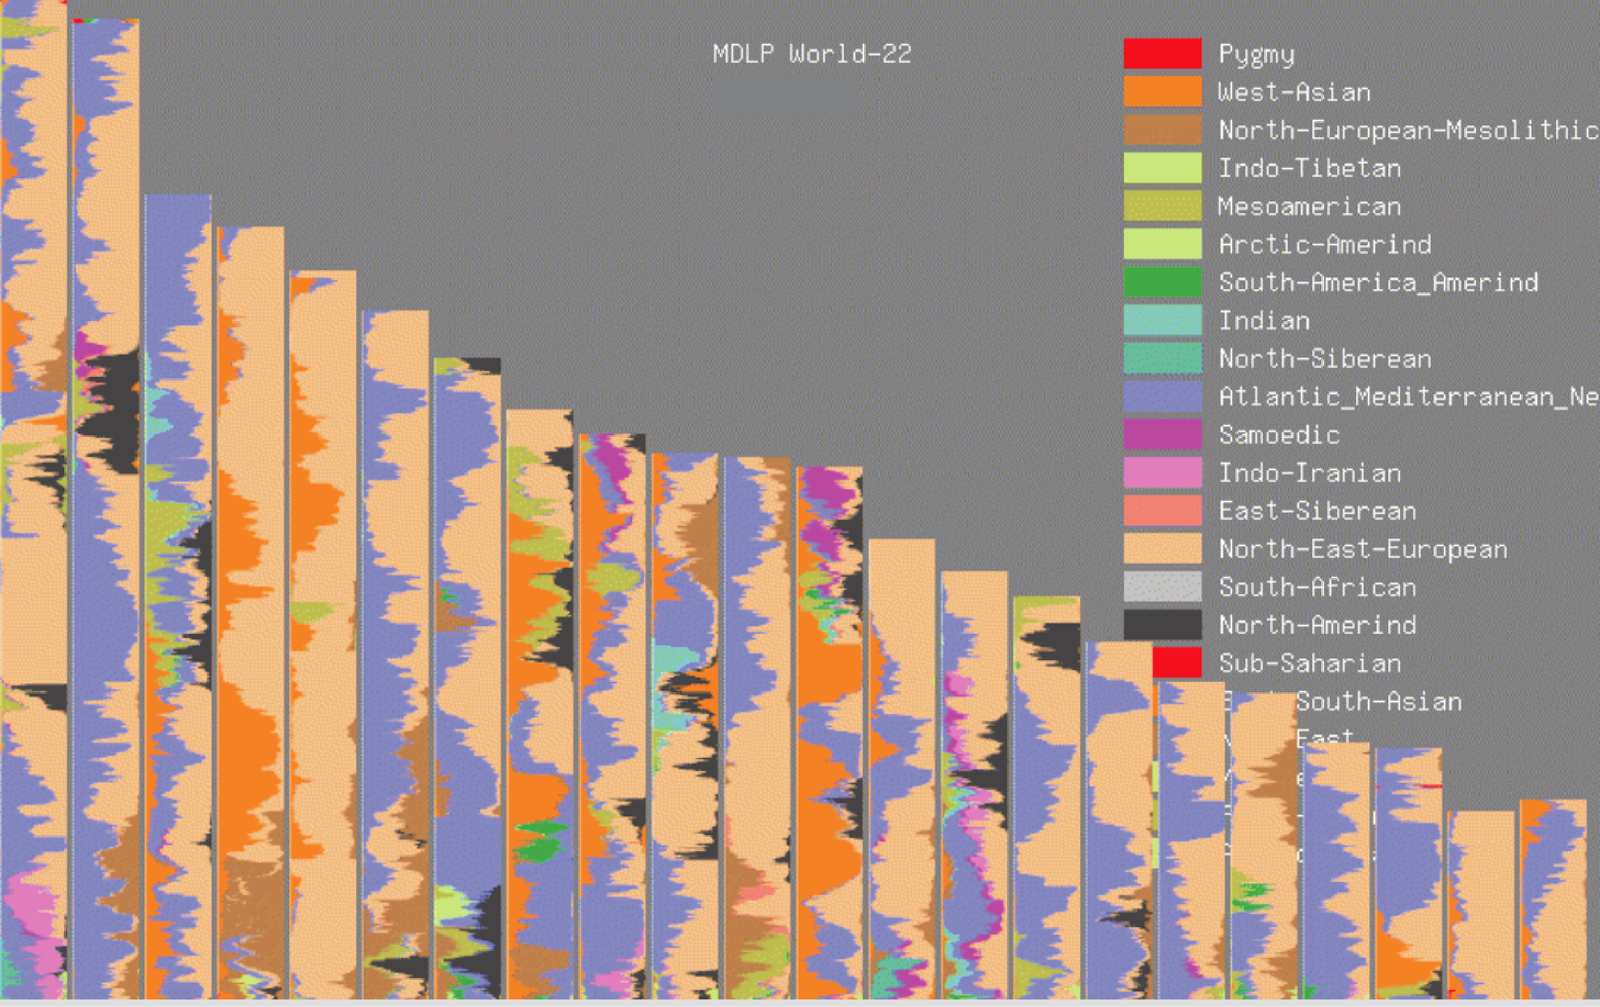 Los resultados de la mezcla GEDmatch MDLP World-22 se muestran como pintura de cromosomas.